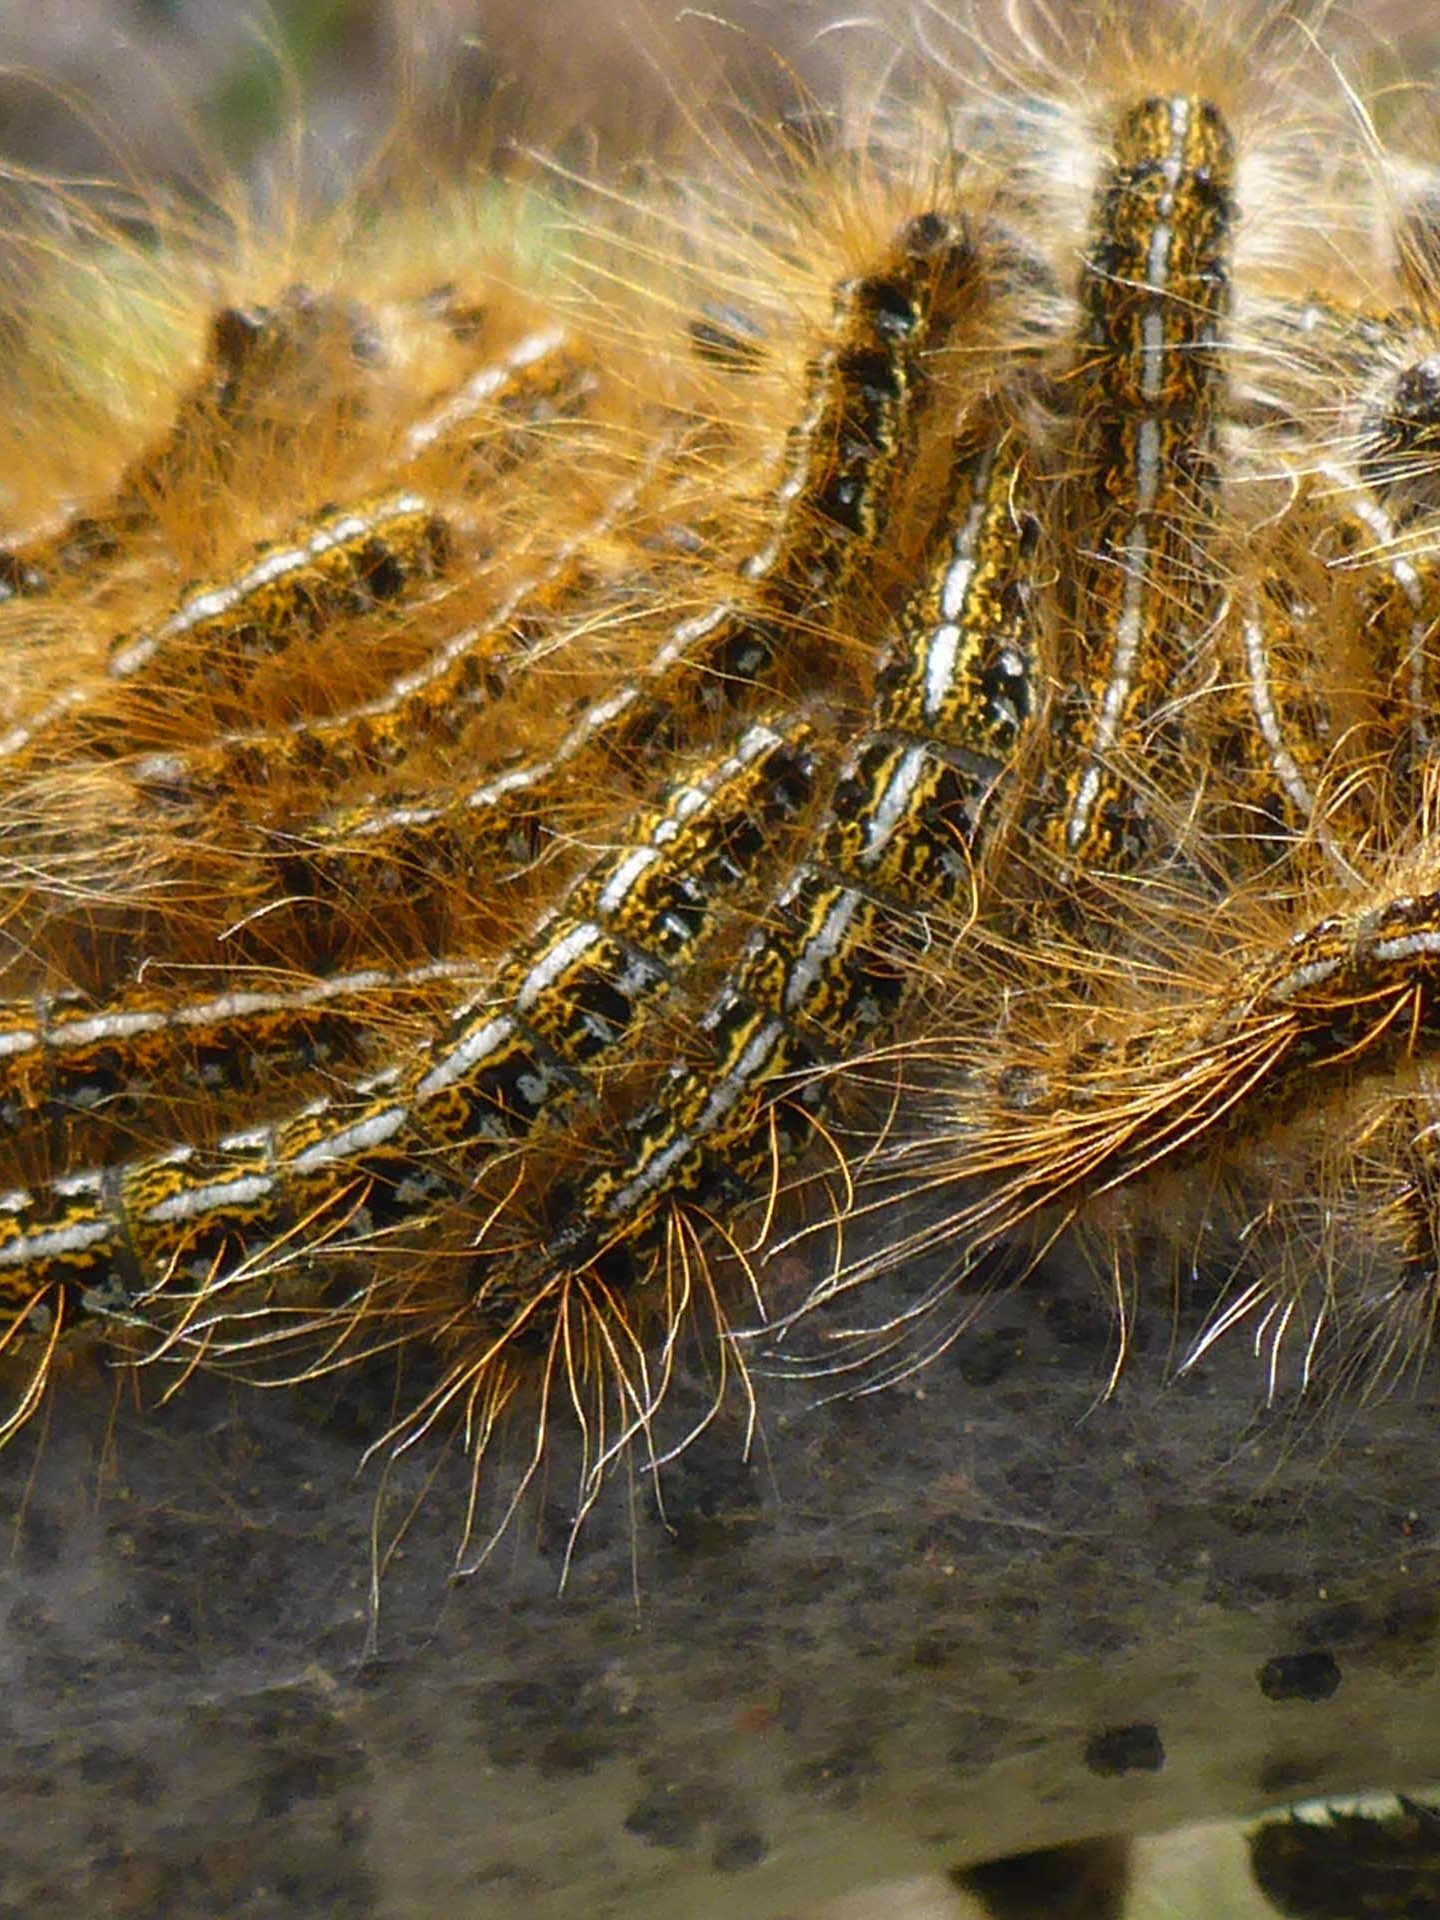 Western tent caterpillars close-up. D. Burk.